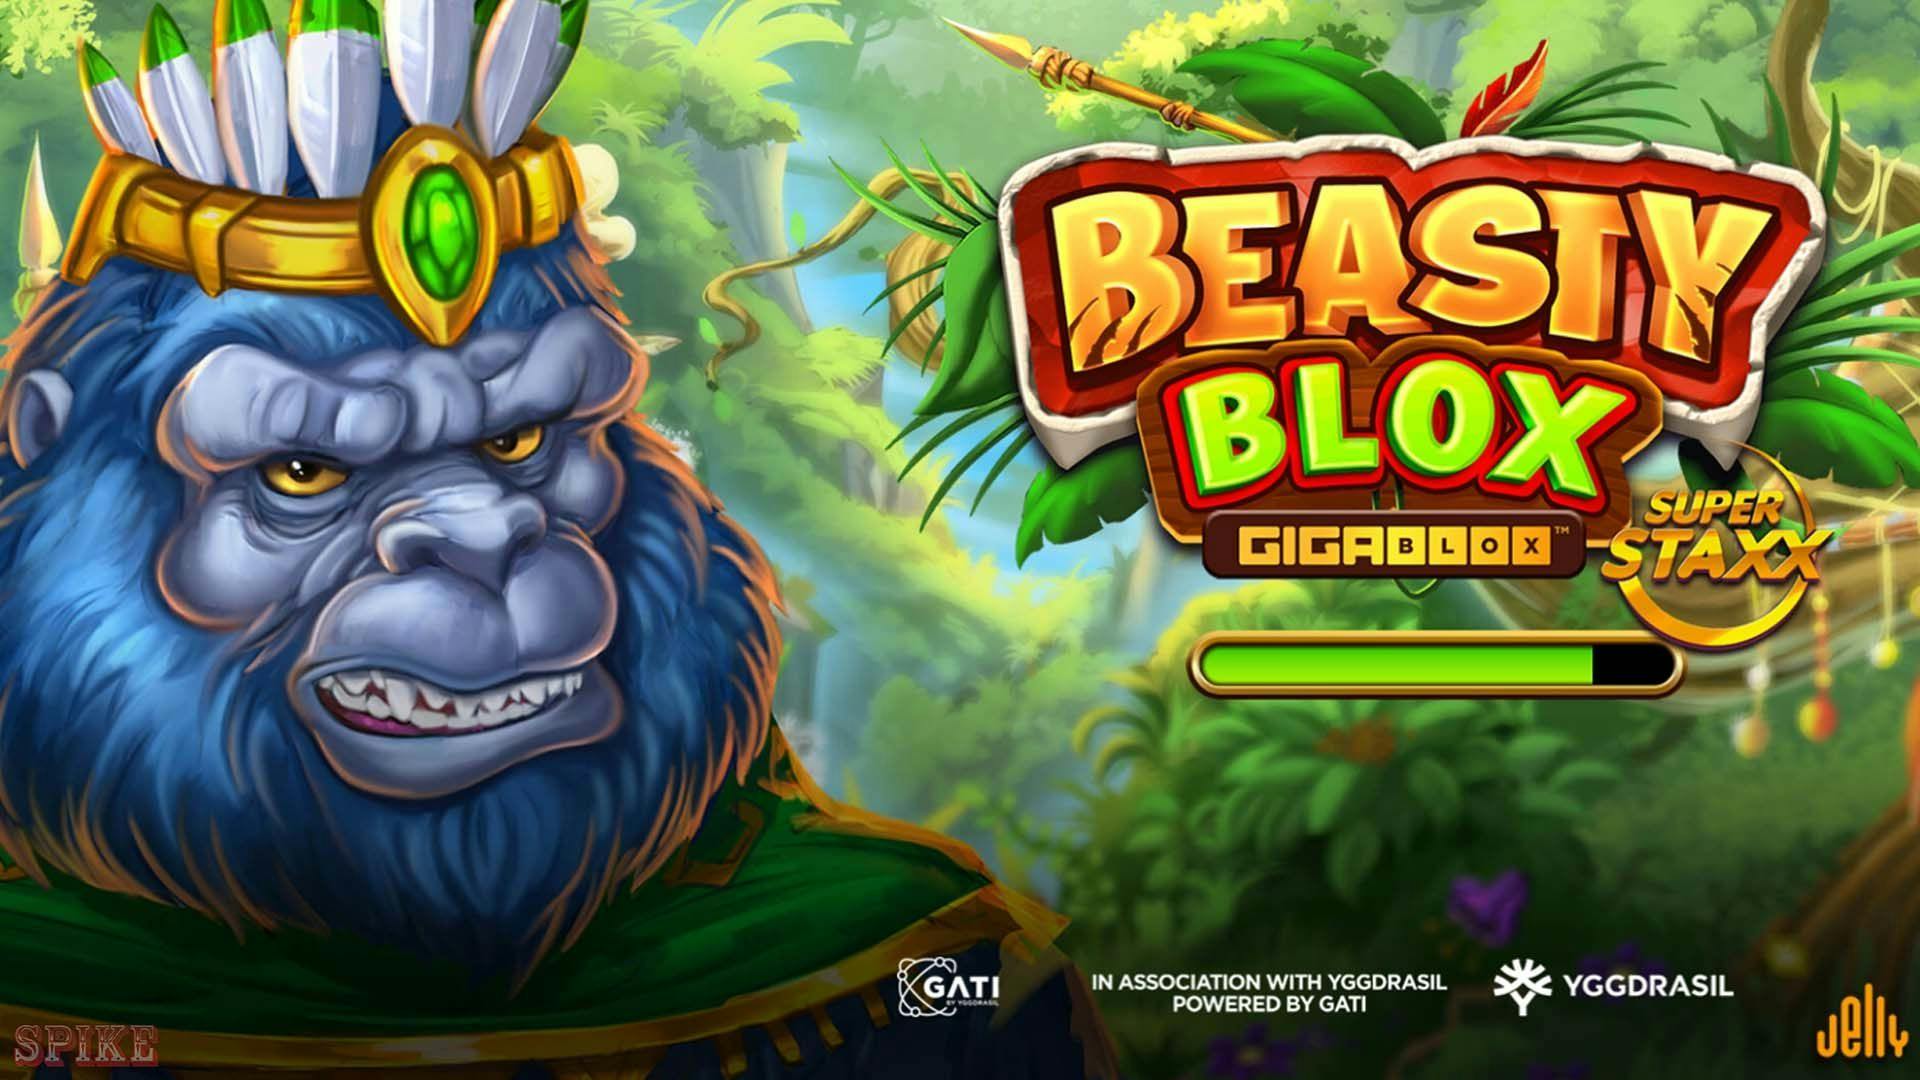 Beasty Blox Gigablox Slot Gratis